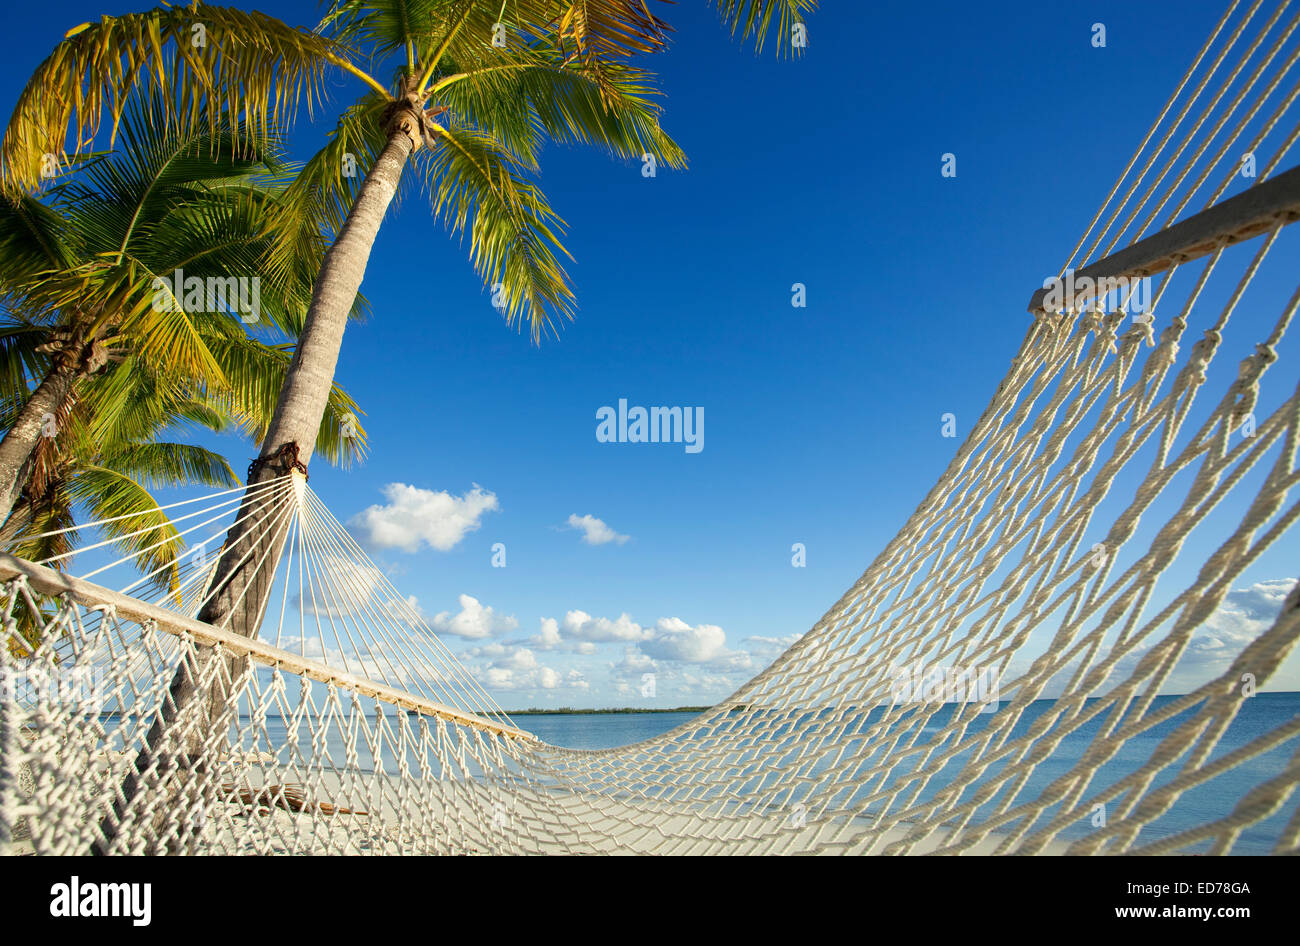 Hammock and palm trees in Abaco, Bahamas Stock Photo